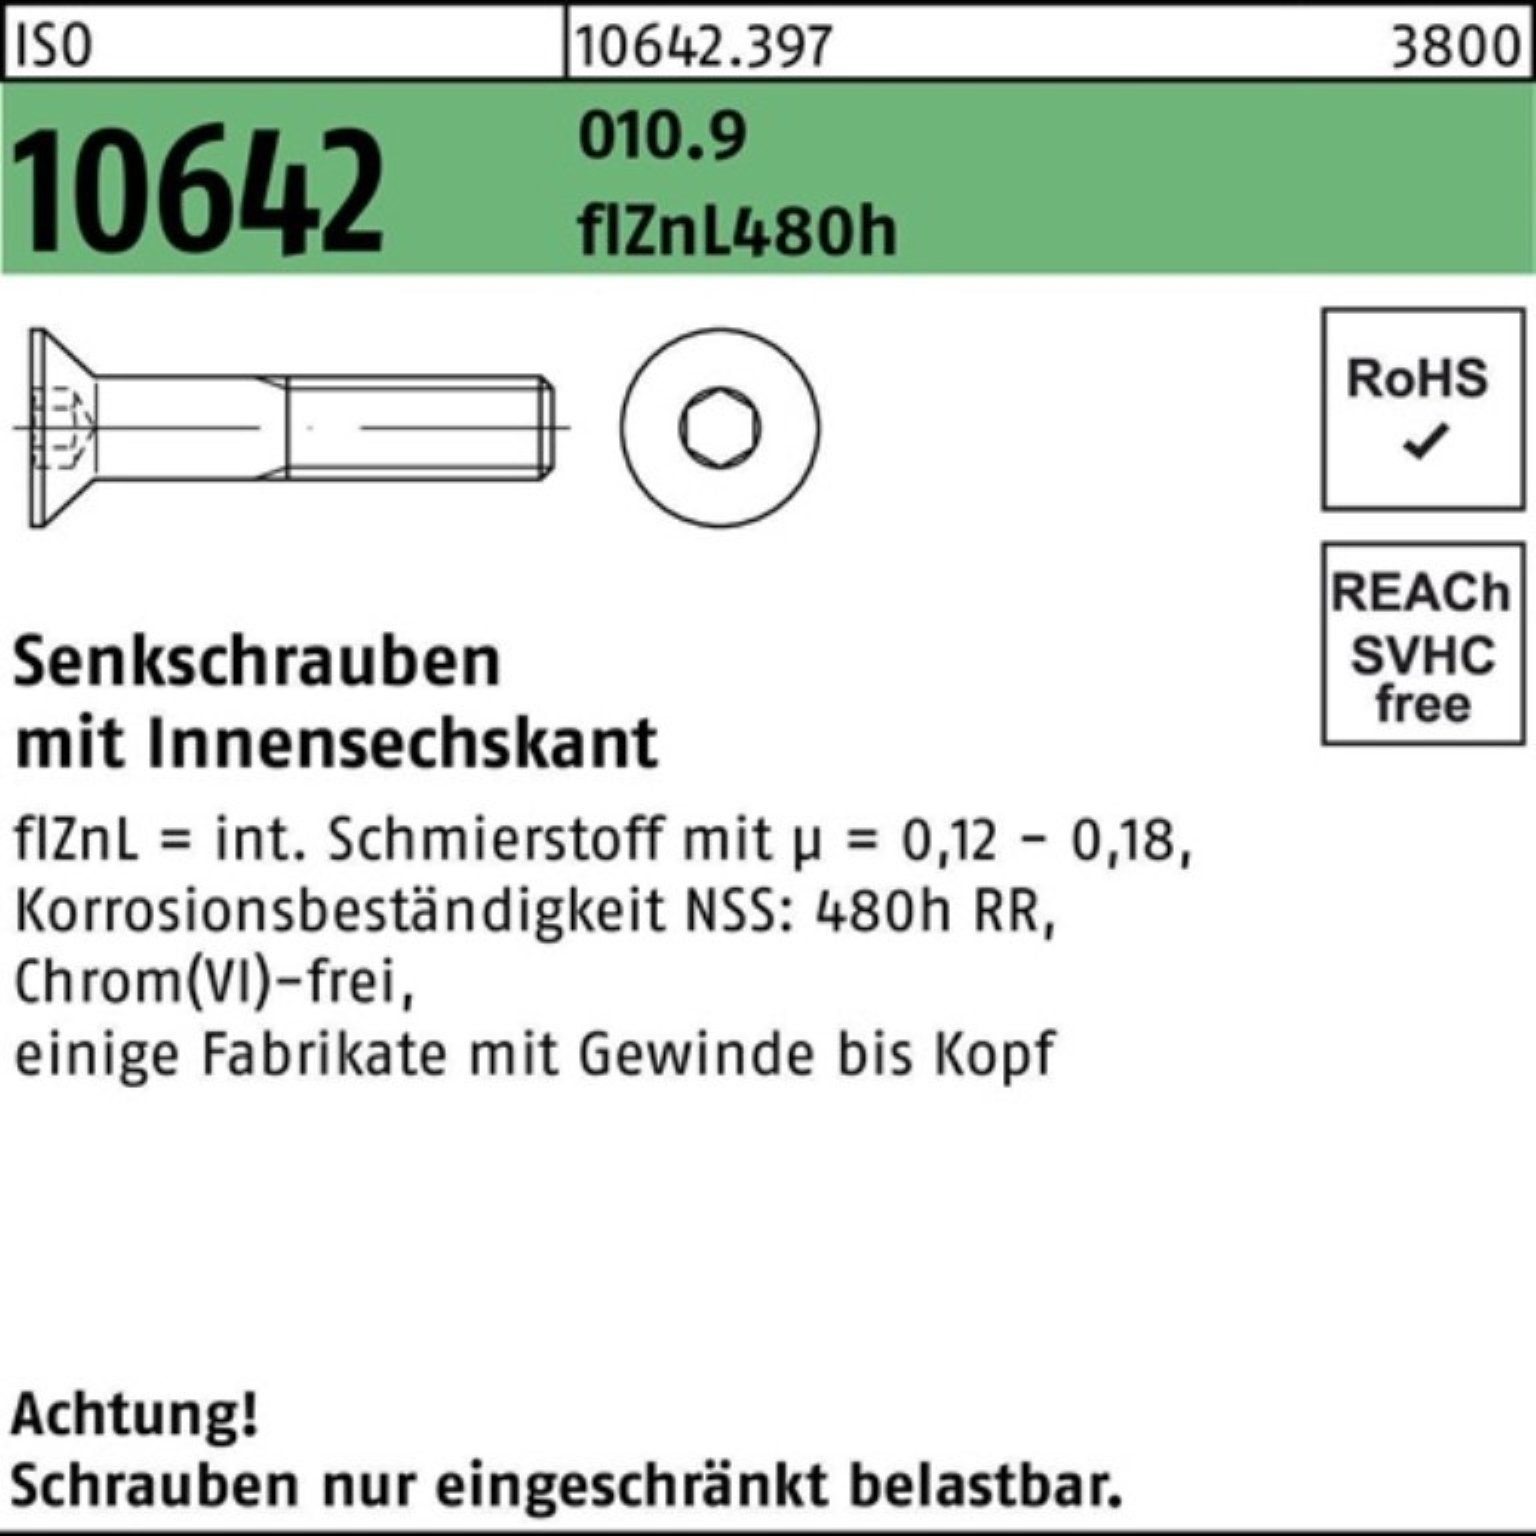 Reyher Senkschraube 100er Pack Senkschraube ISO 10642 Innen-6kt M16x40 010.9 flZnL 480h zi